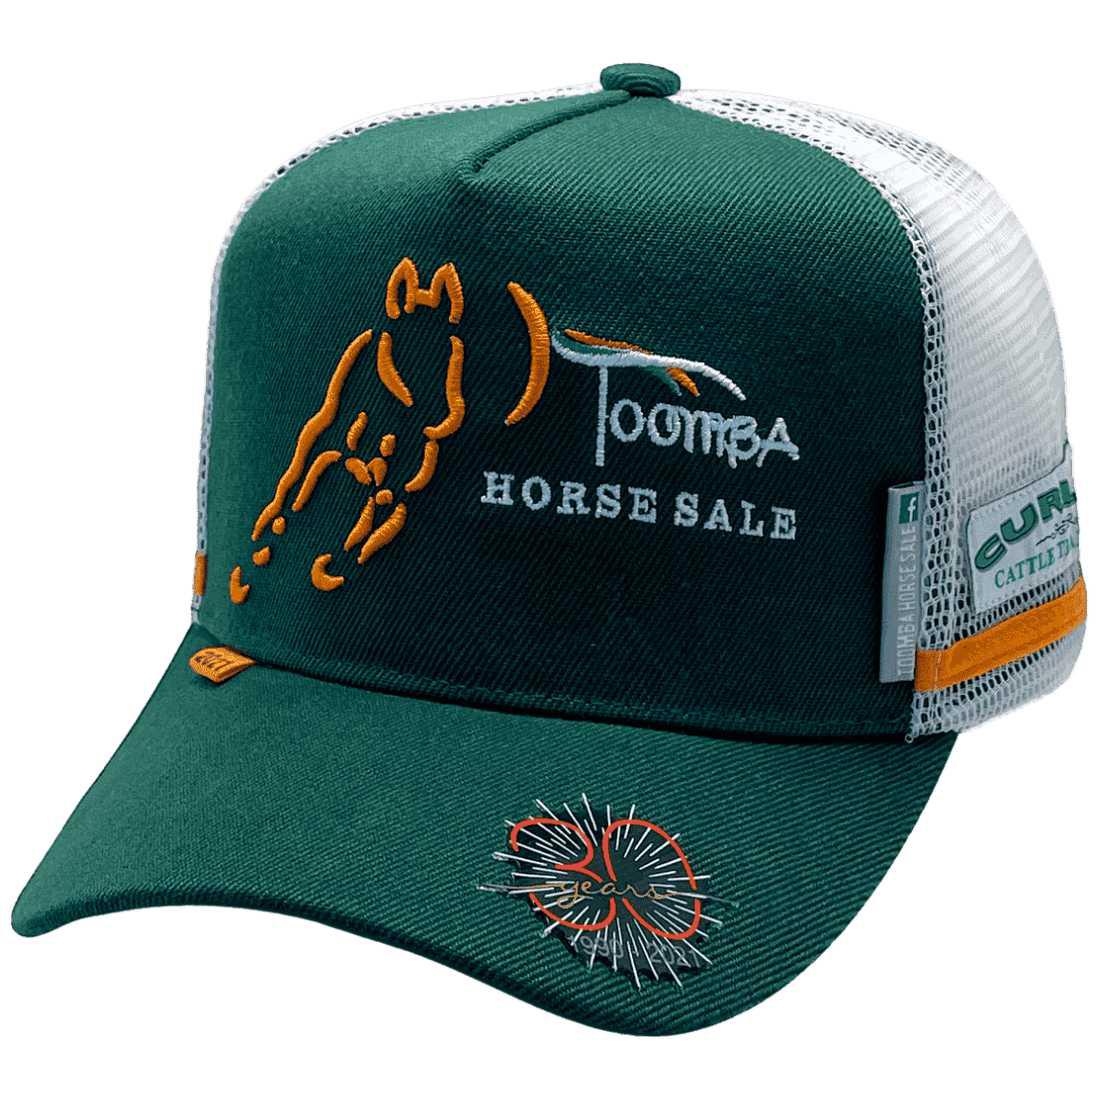 Toomba Horse Sale - Power Aussie Trucker Hat